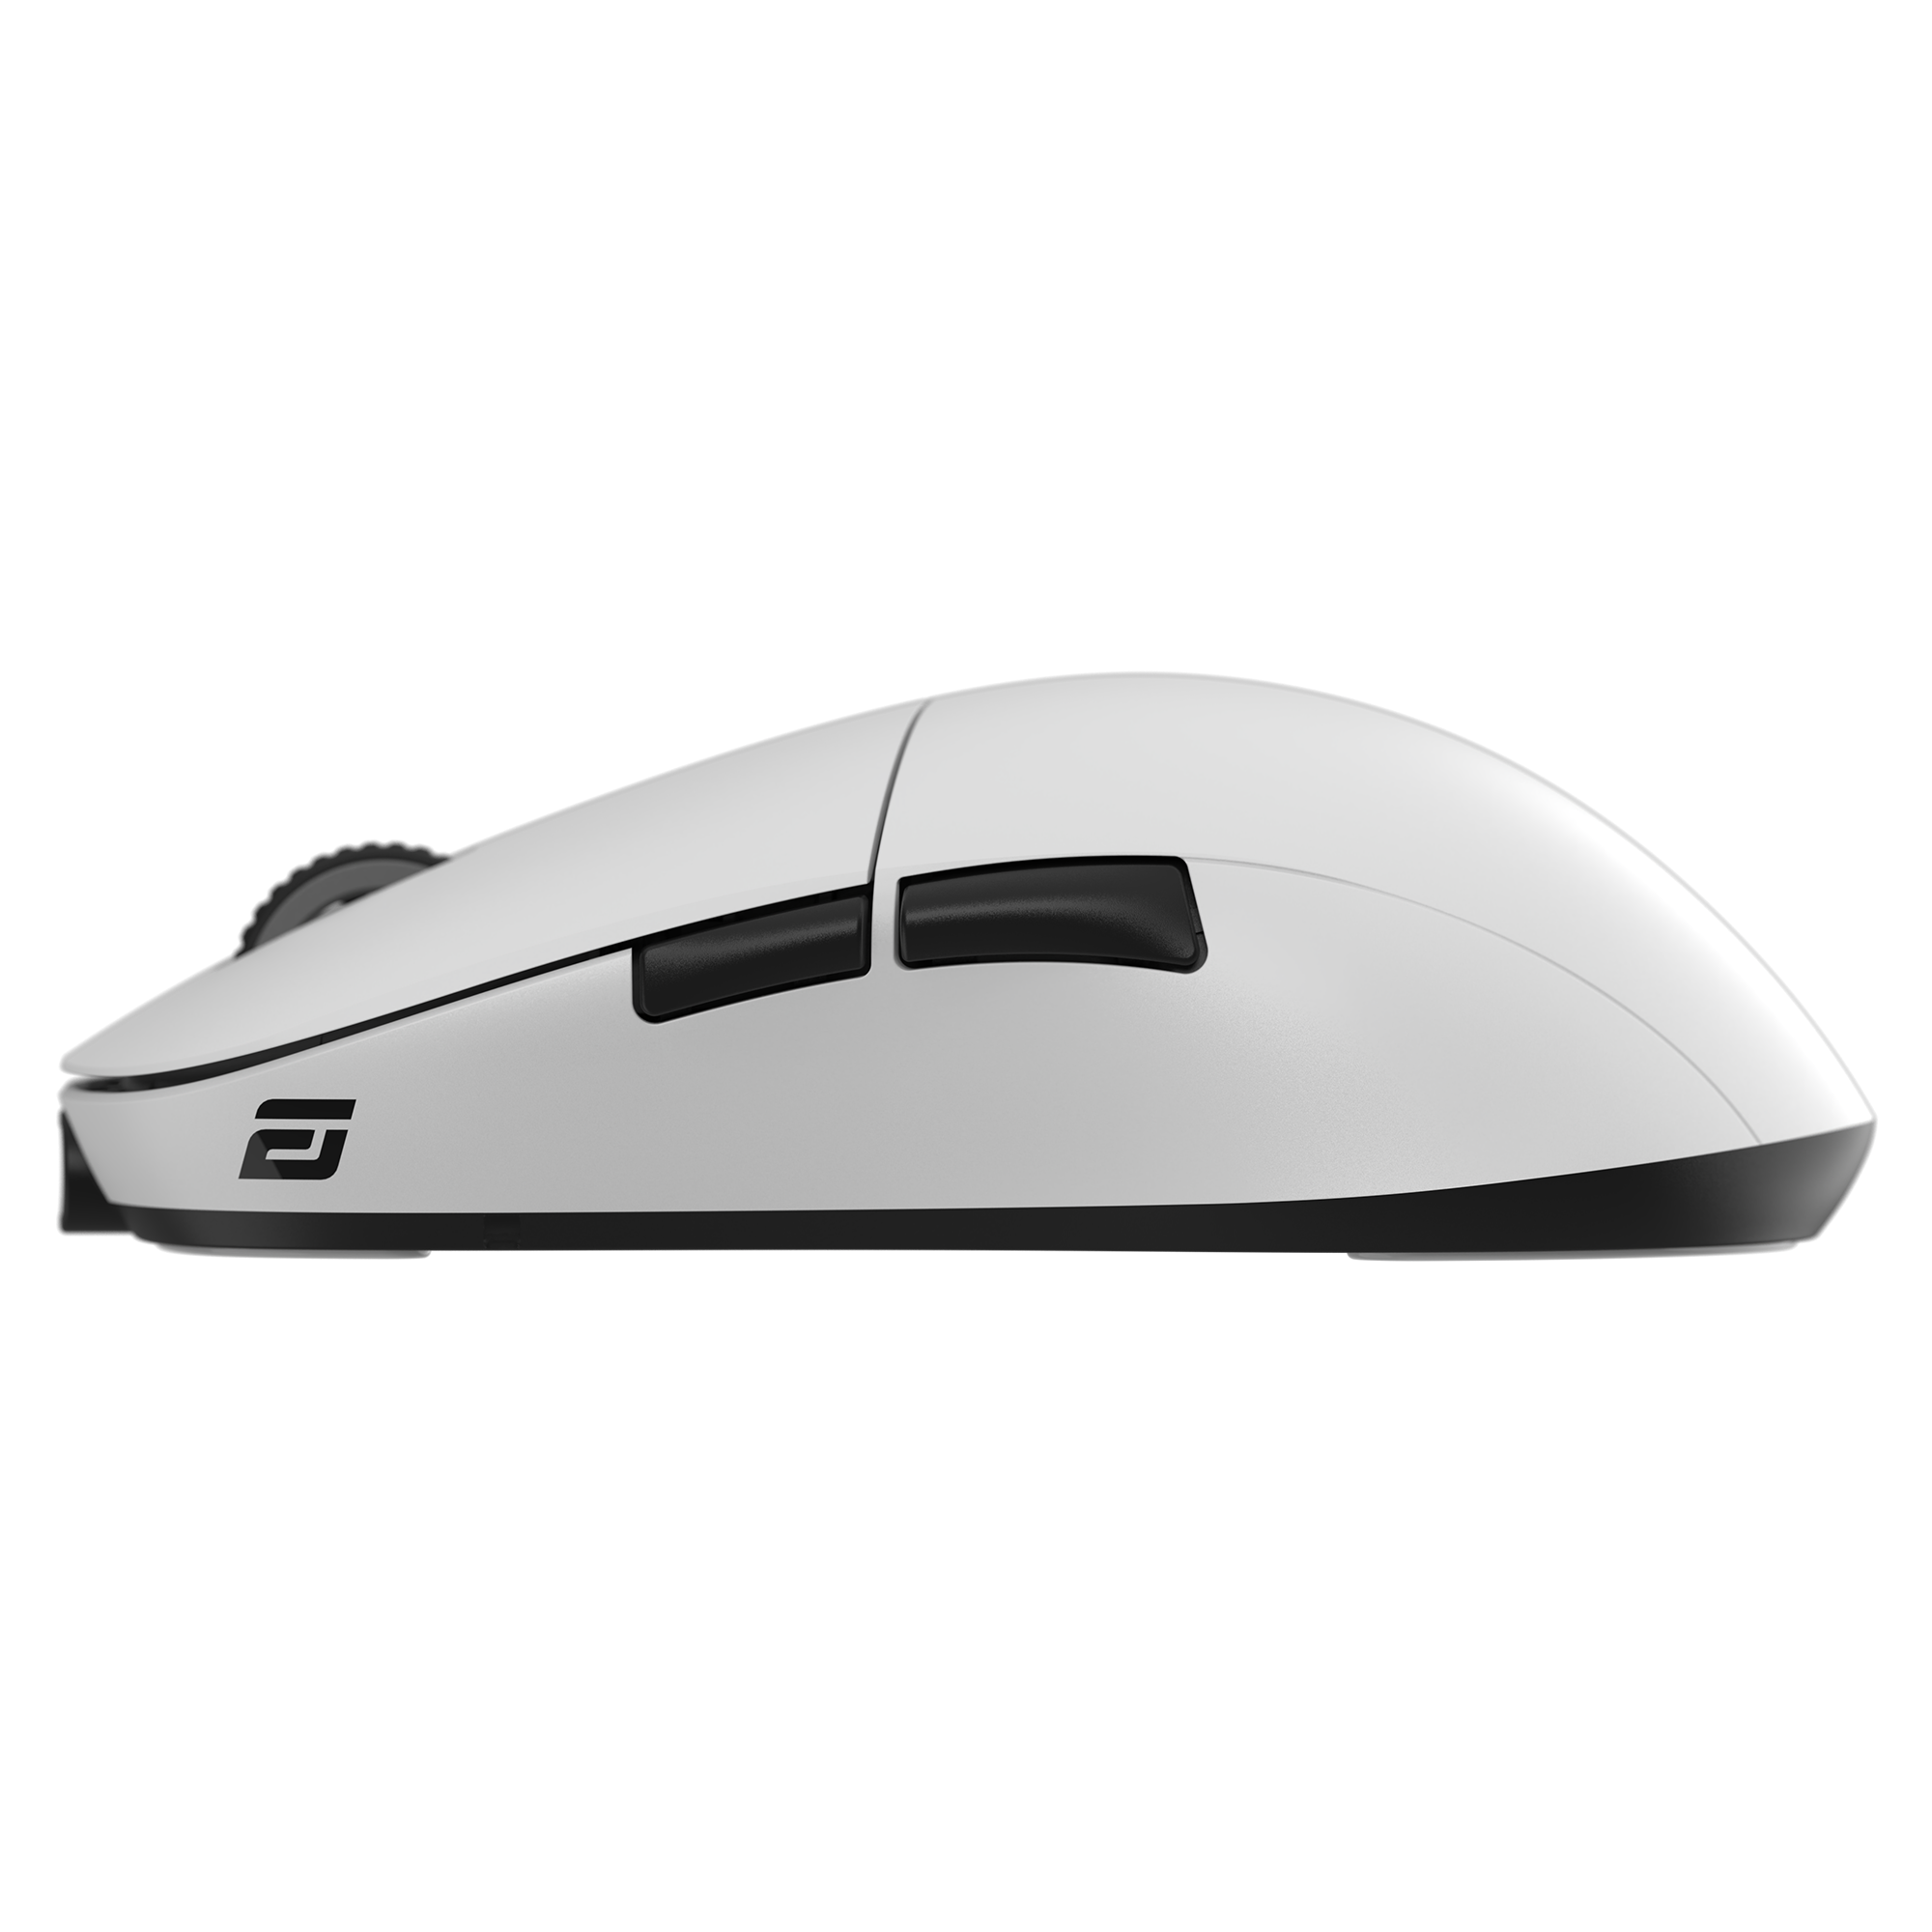 Endgame Gear XM2we Wireless Mouse - White EGG-XM2WE-WHT 